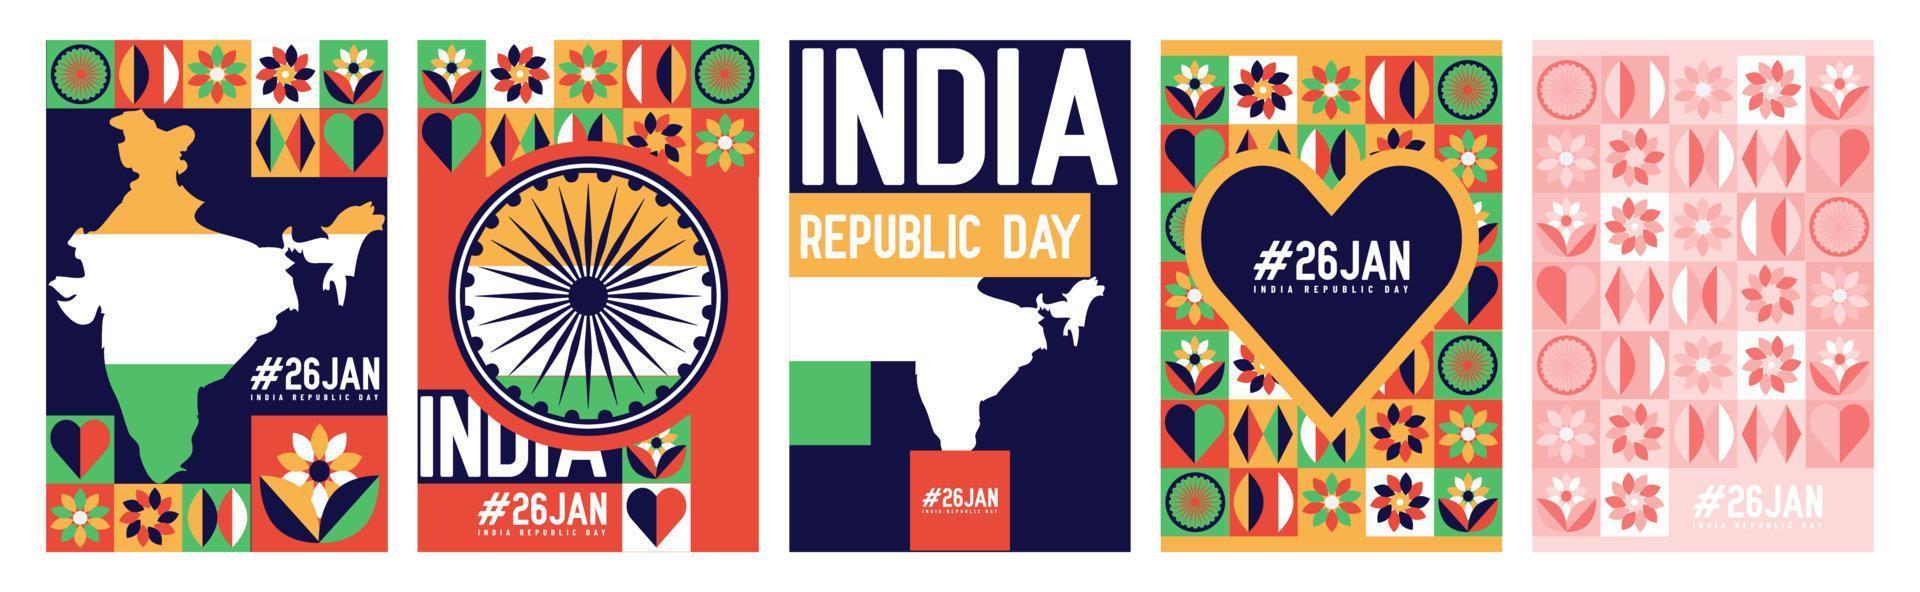 sammlung von indien 26. januar republik tag geometrische illustration. für grußkarte, poster, buchcover, banner, postdesign. vektor